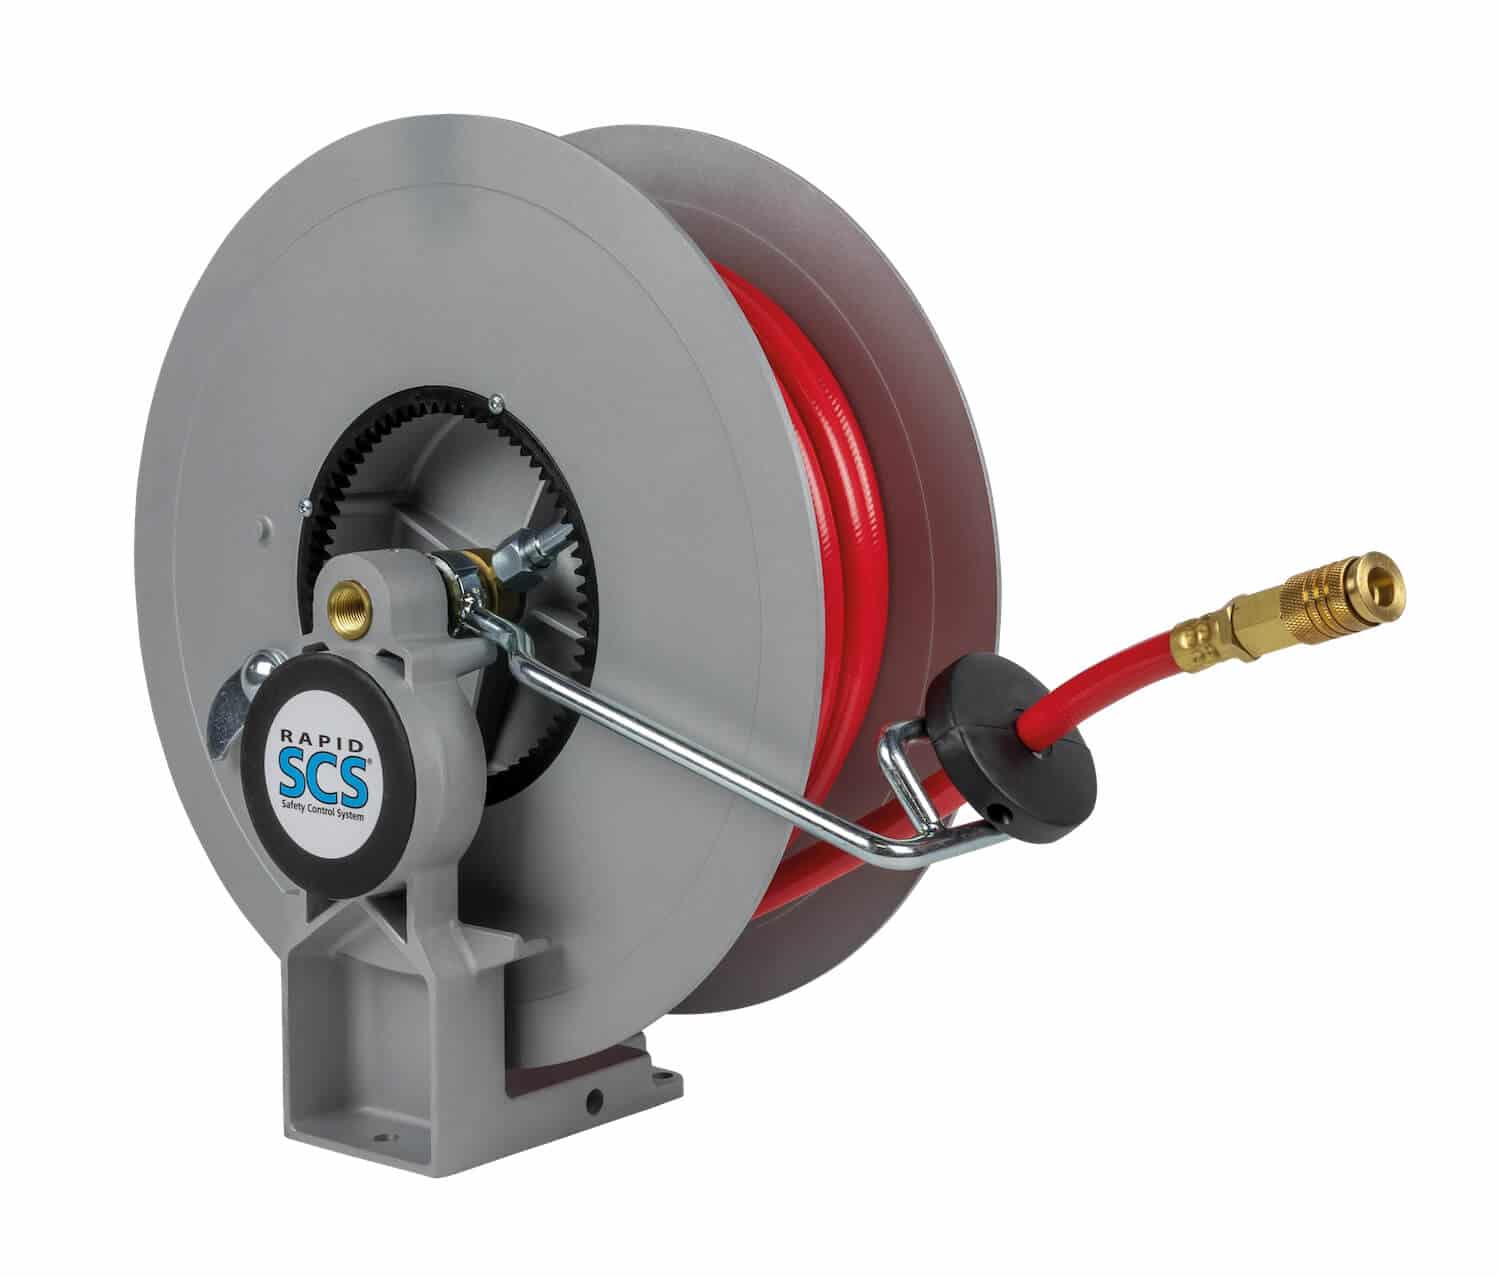 Automatischer Schlauchaufroller für technische Gase für bis zu 15 m Schlauch DN 10, zur Wand-, Boden- oder Deckenmontage.